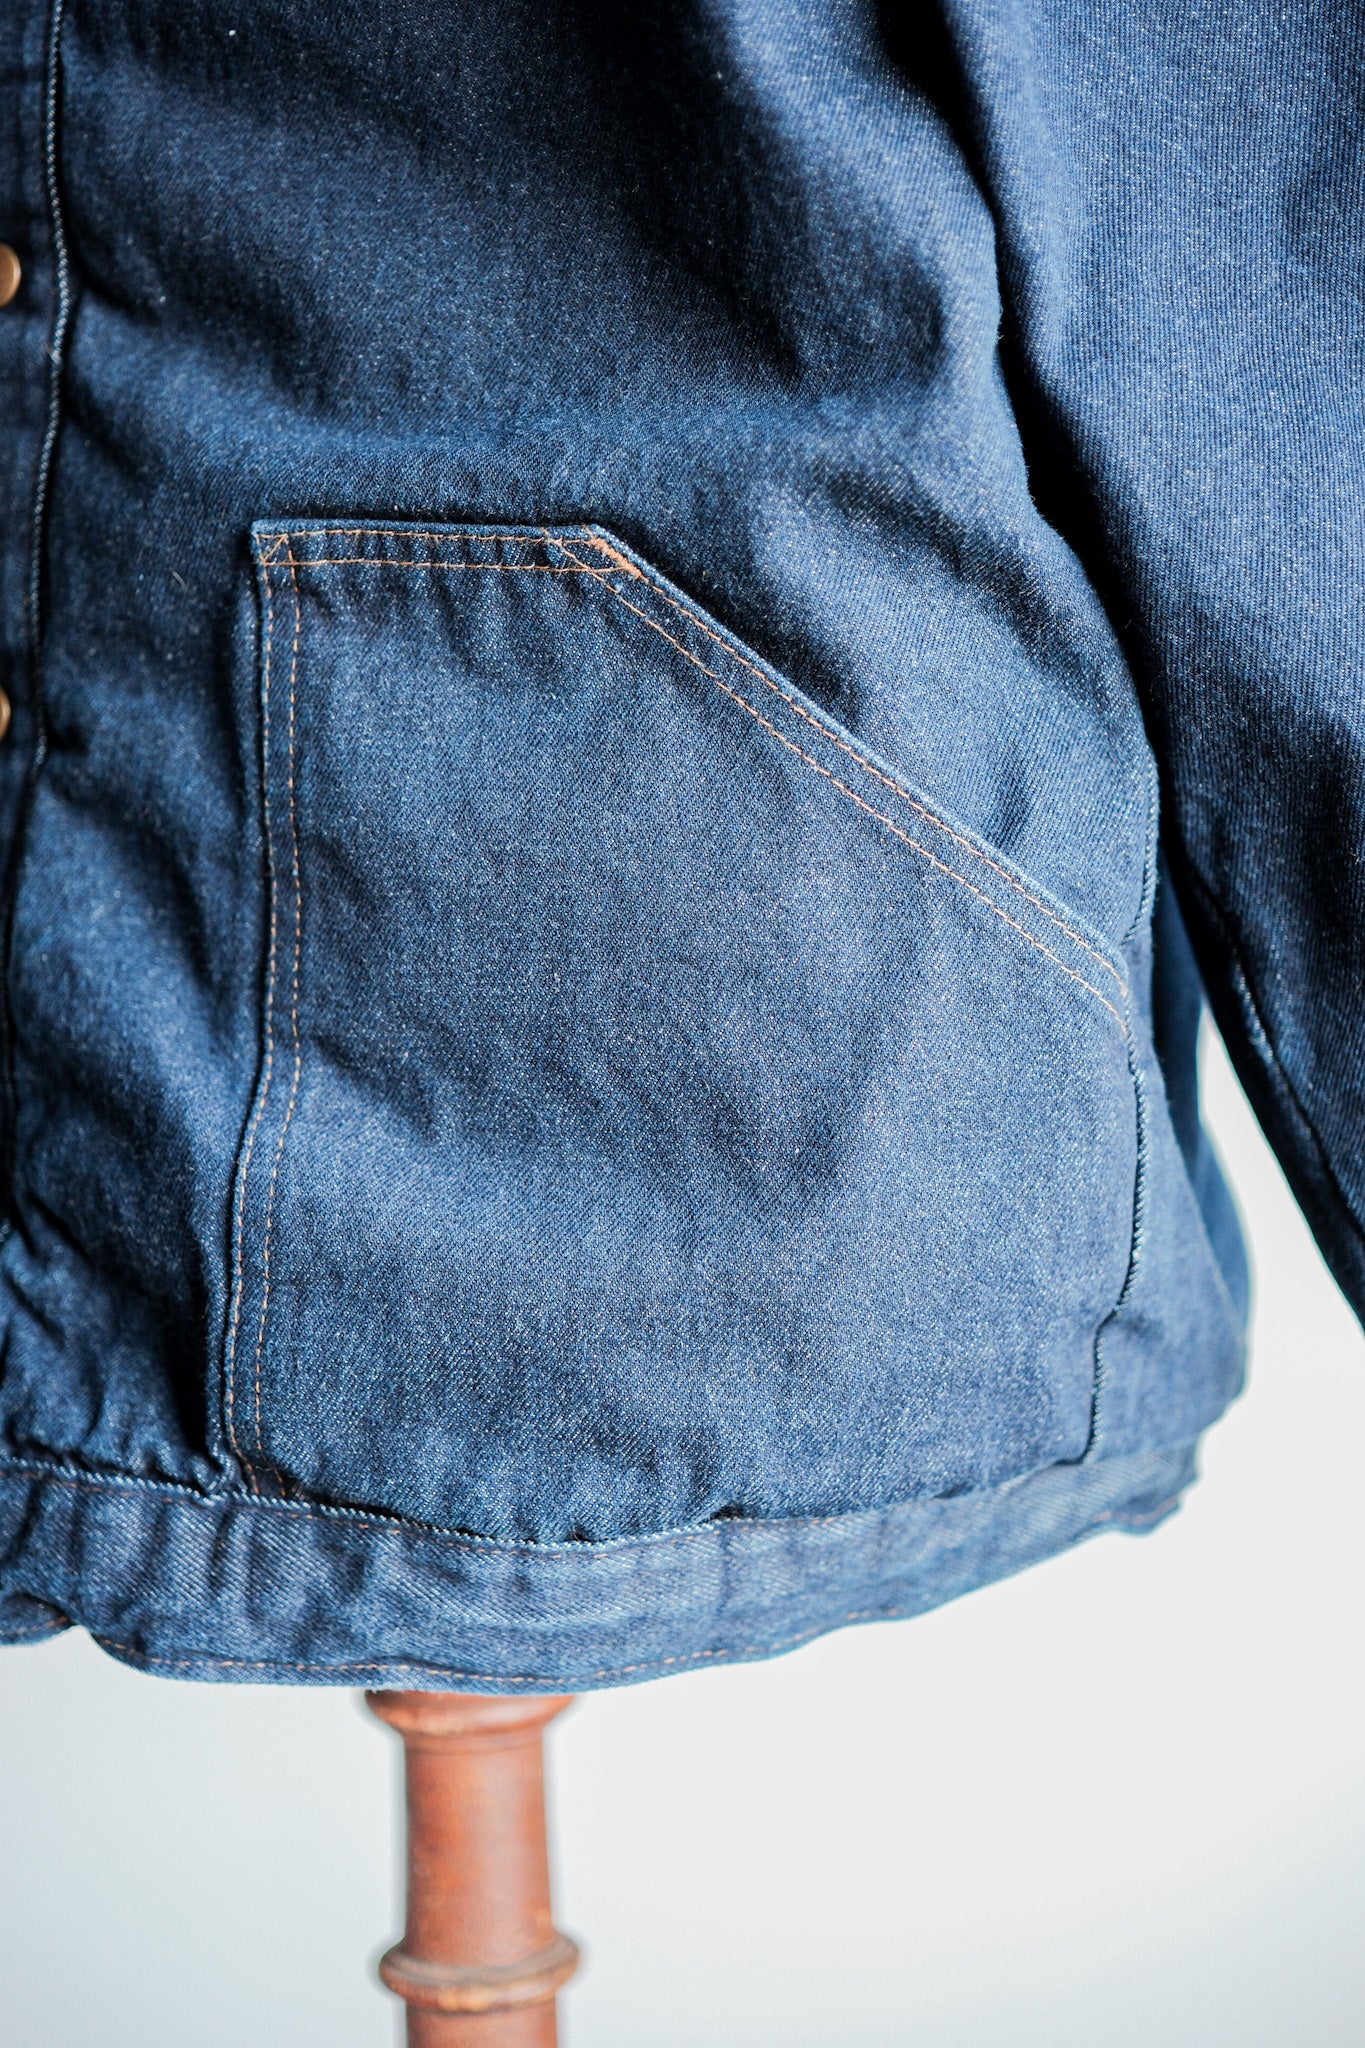 [〜80年代]美國復古raglan袖子襯墊牛仔夾克大小。54